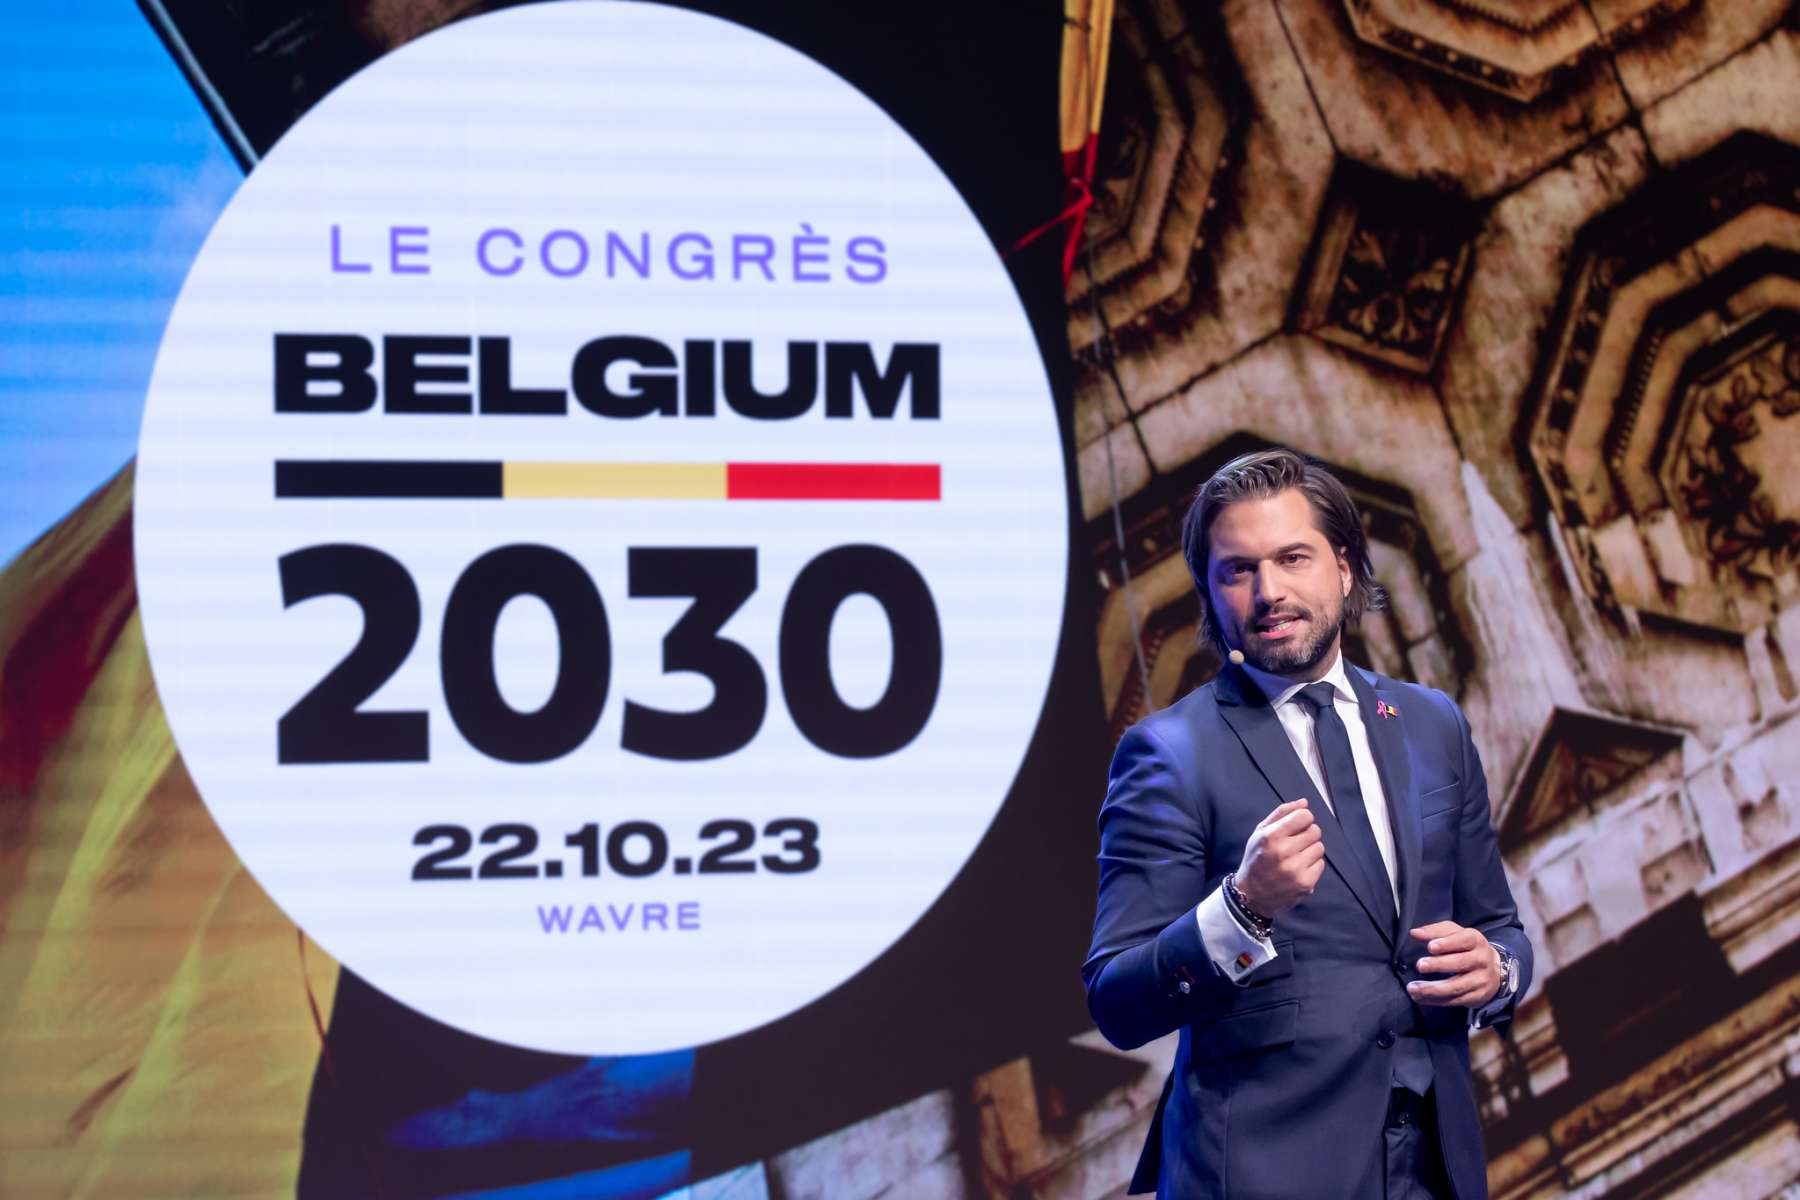 Congrès Belgium 2030 – Discours du Président, Georges-Louis BOUCHEZ